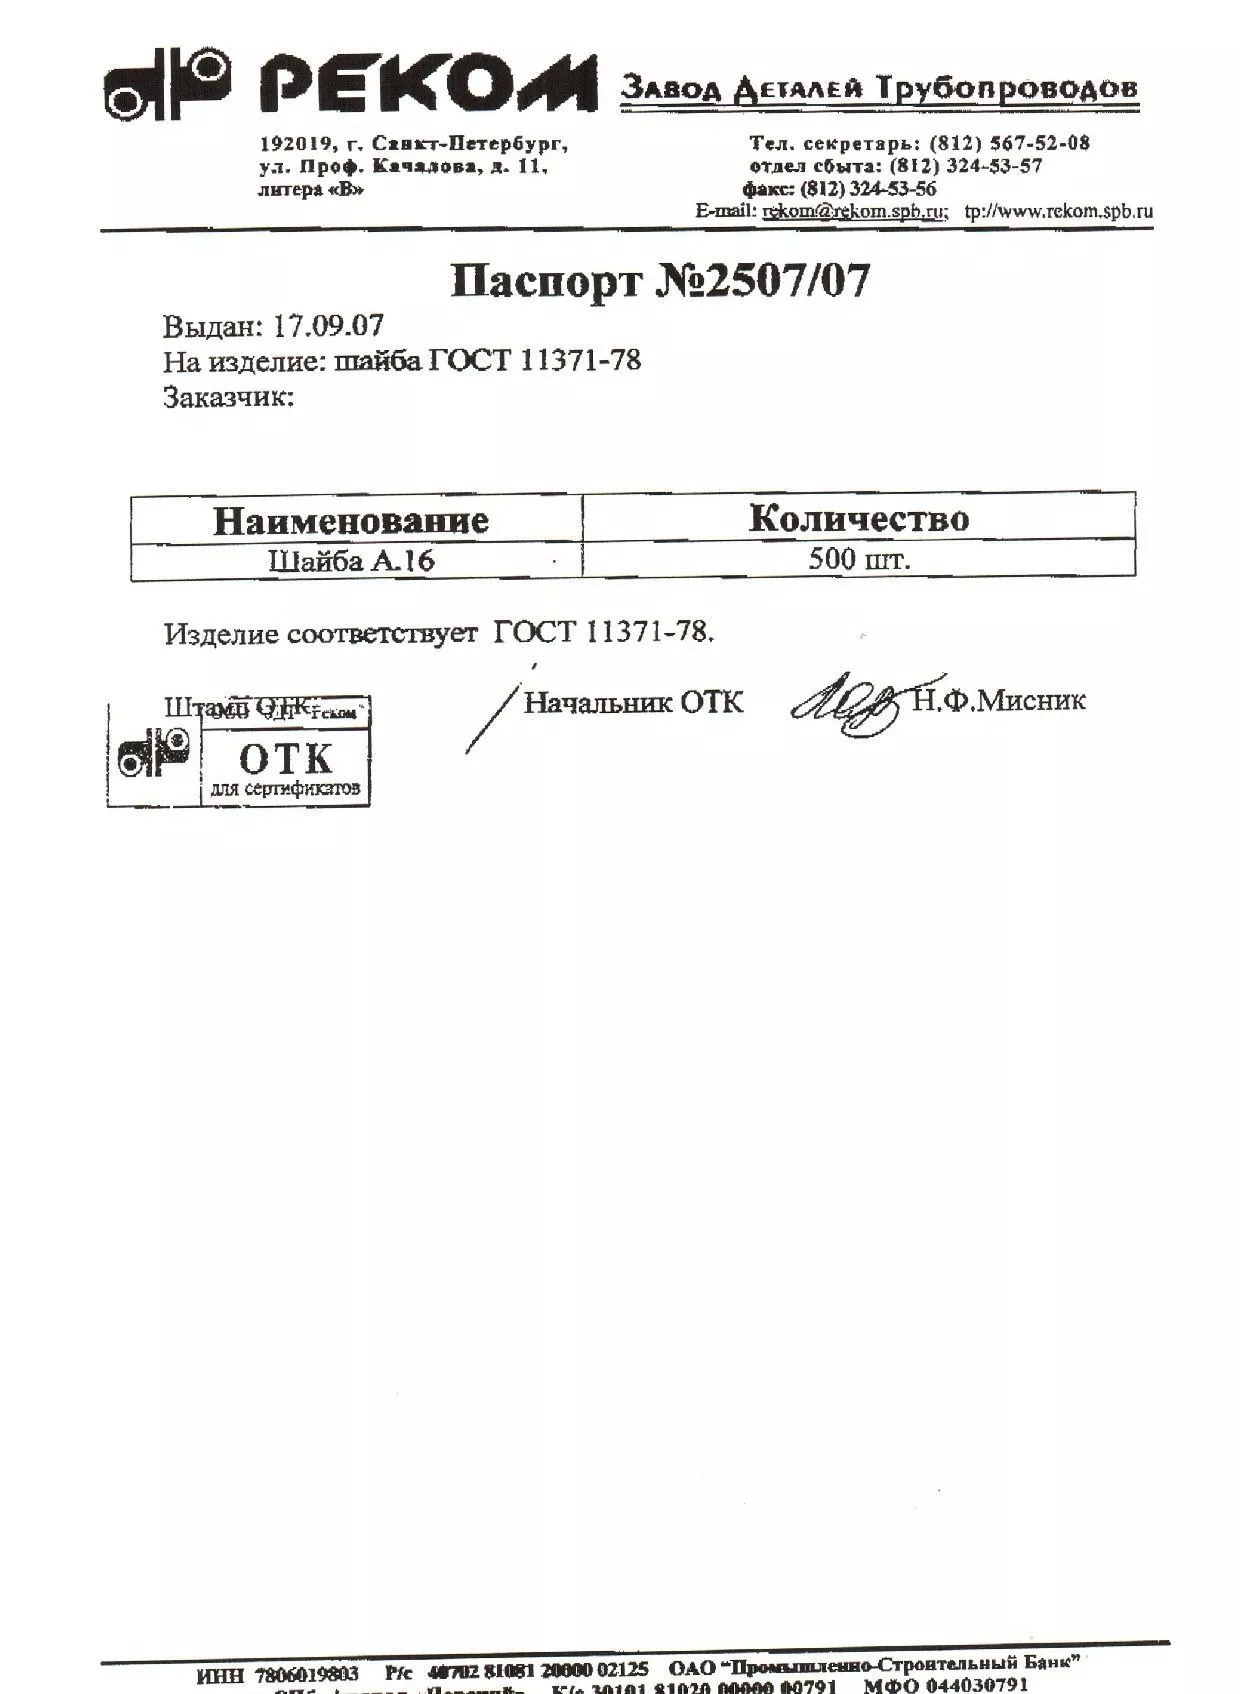 Сертификат на шайбу А16 от 09-07